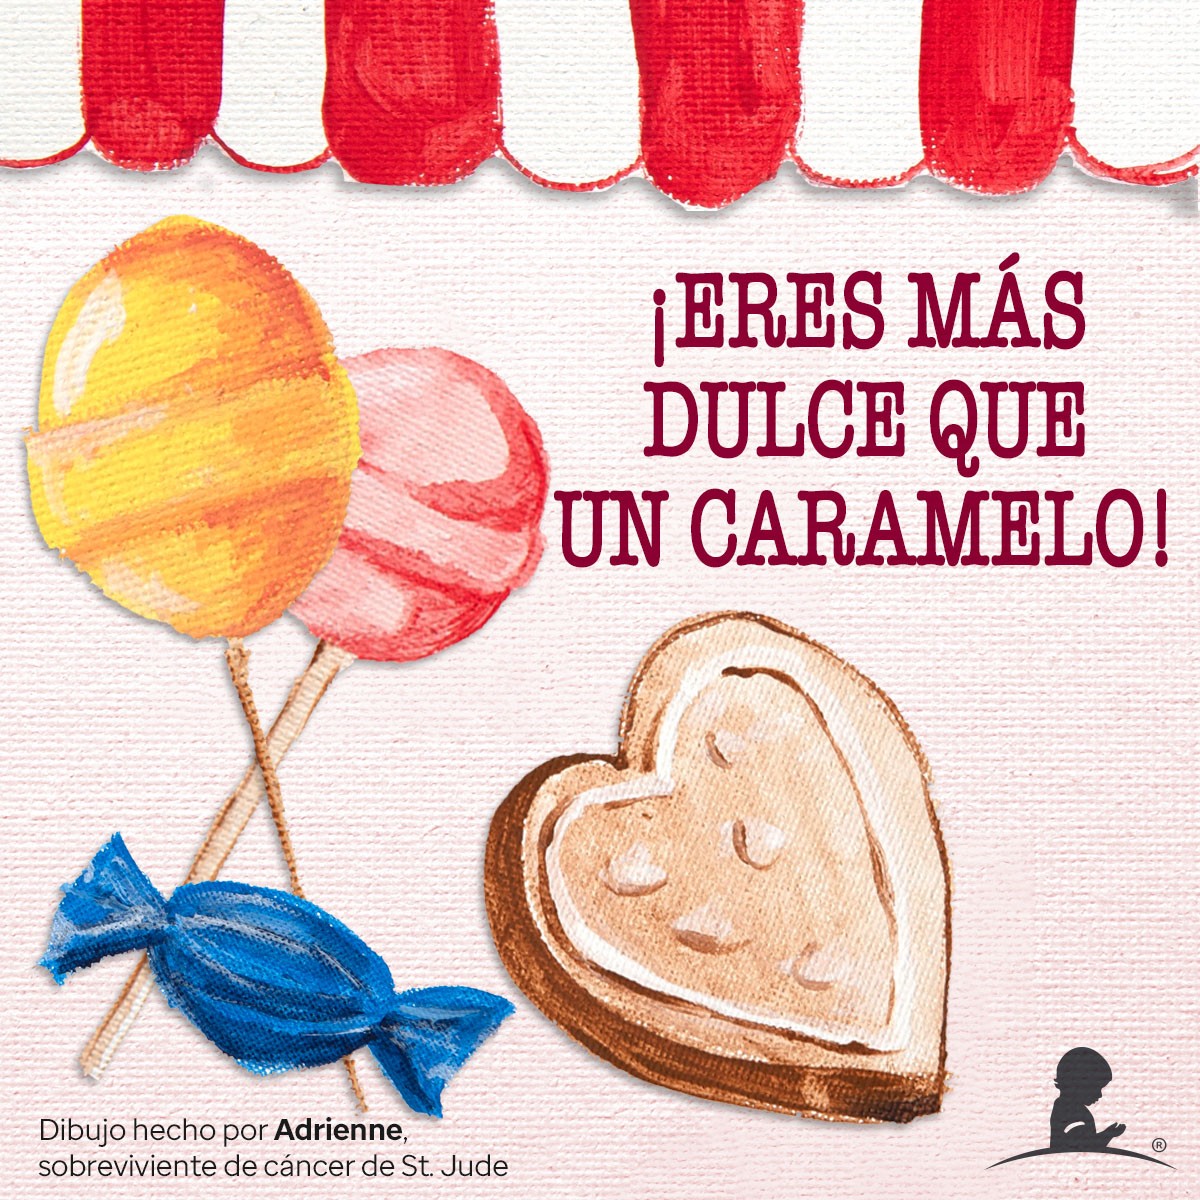 Tarjeta celebratoria del día de San Valentín con imágenes de dulces que lee “!Eres mas dulce que un caramelo!”